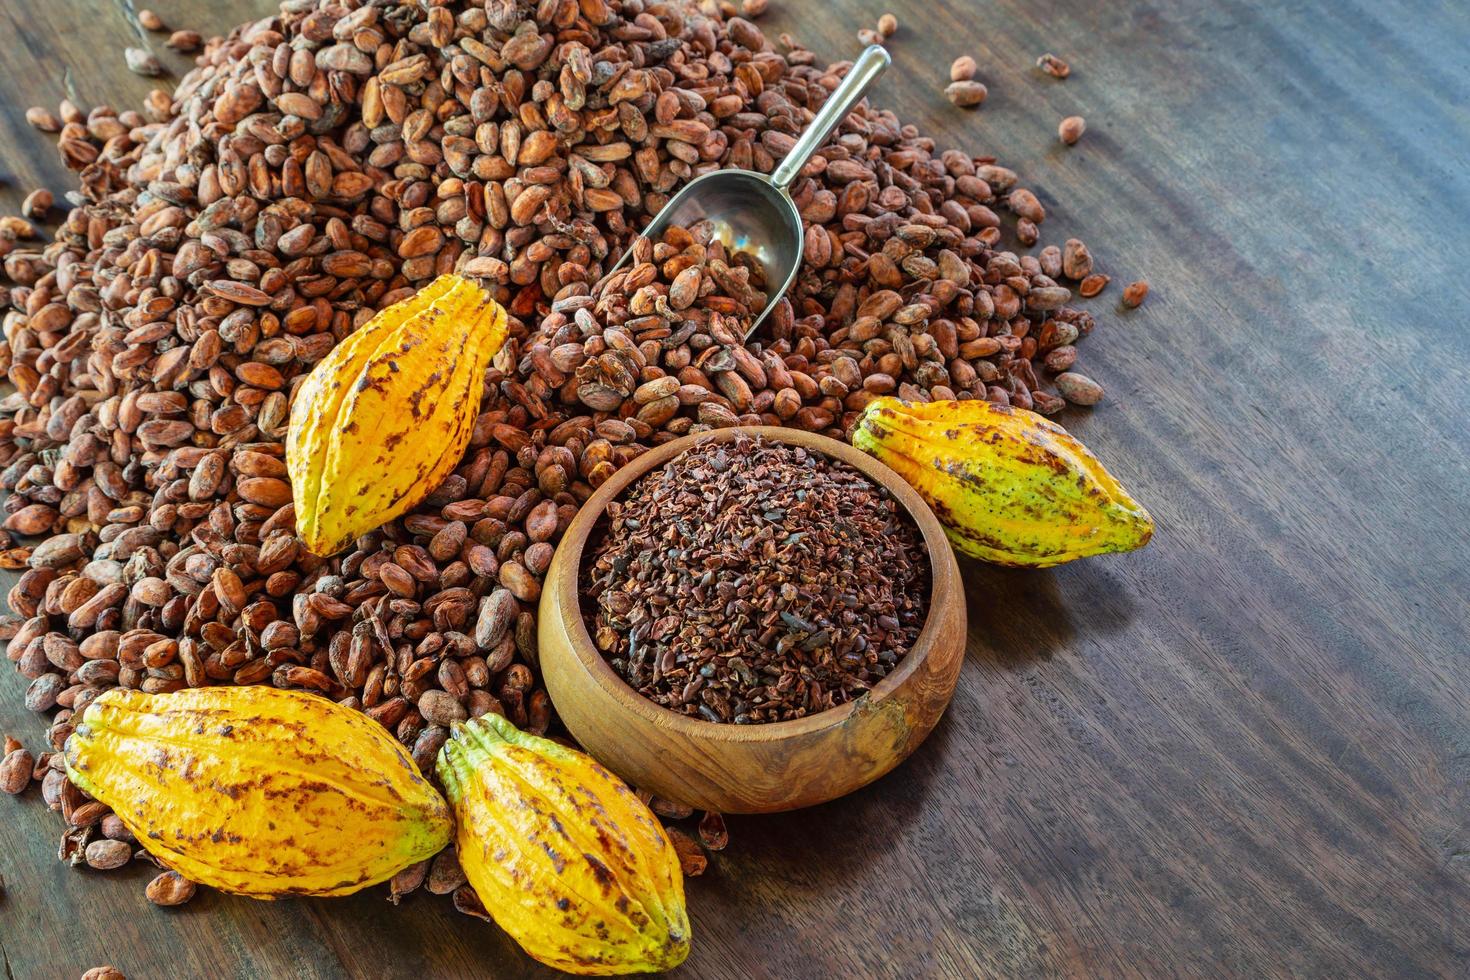 grué de cacao et fruit de cacao sur table en bois photo